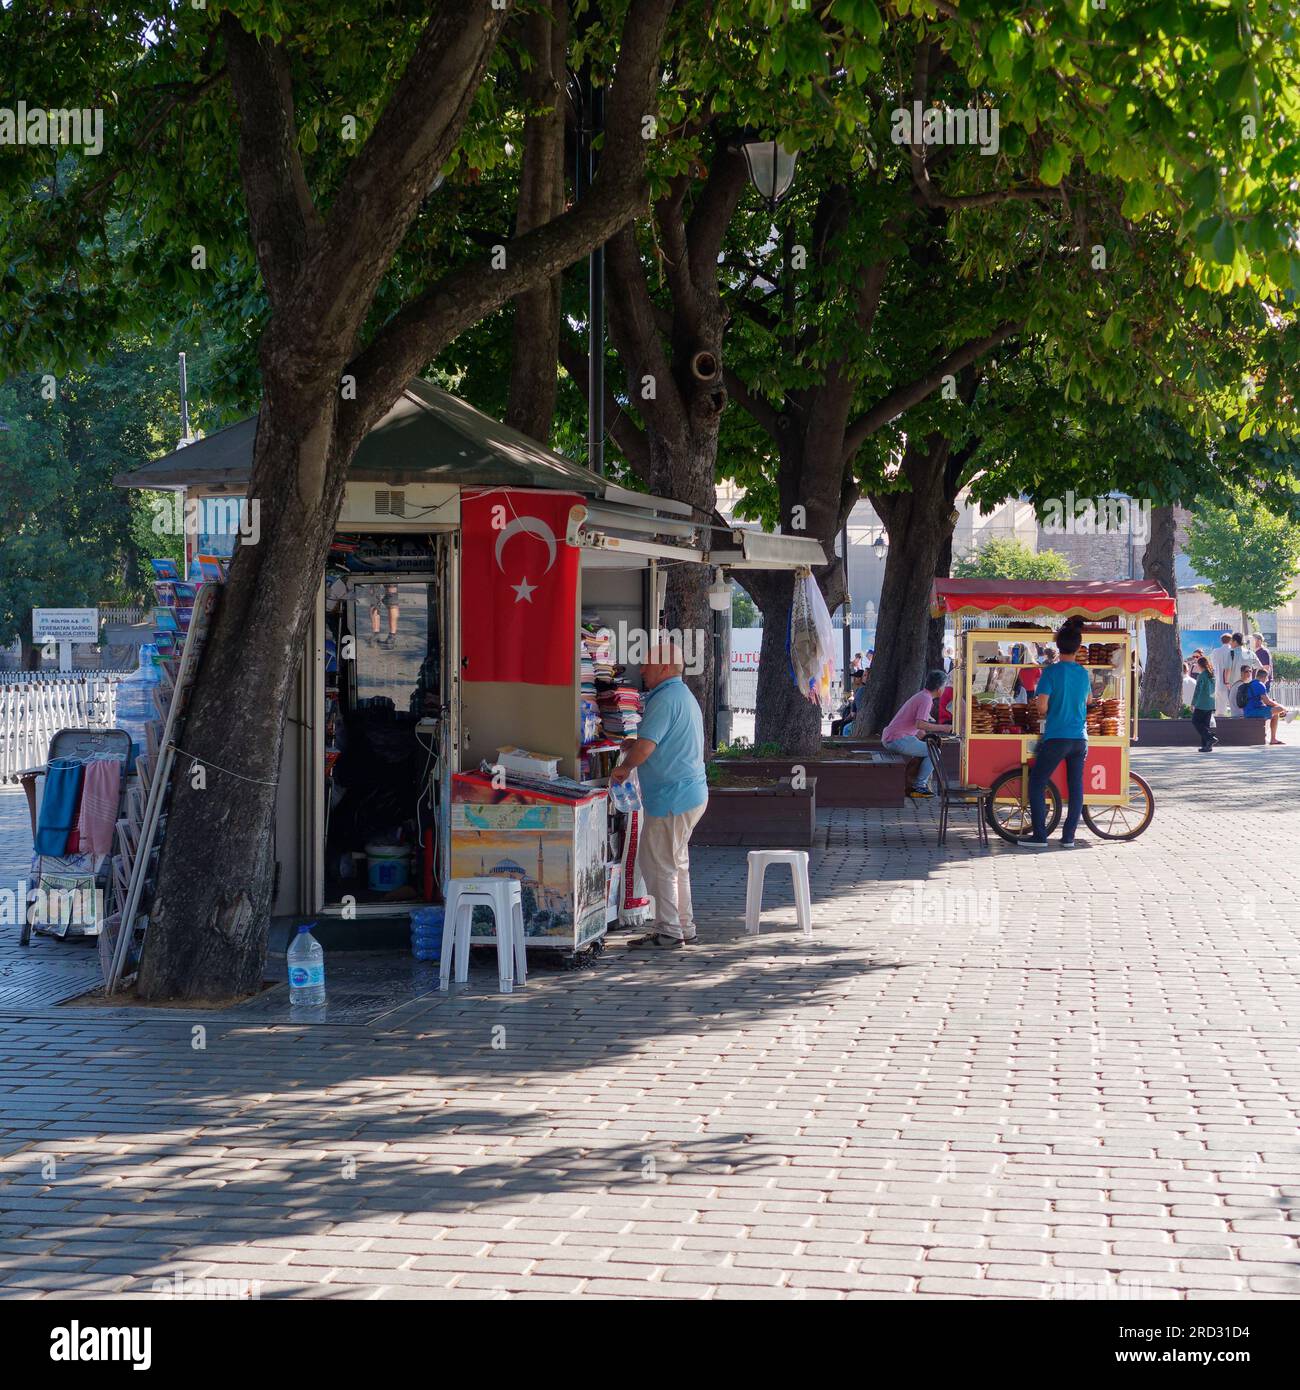 Sultanahmet Park avec stalle de soirée et chariot rouge vendant des Simits aka Turkish bagels, Istanbul, Turquie Banque D'Images